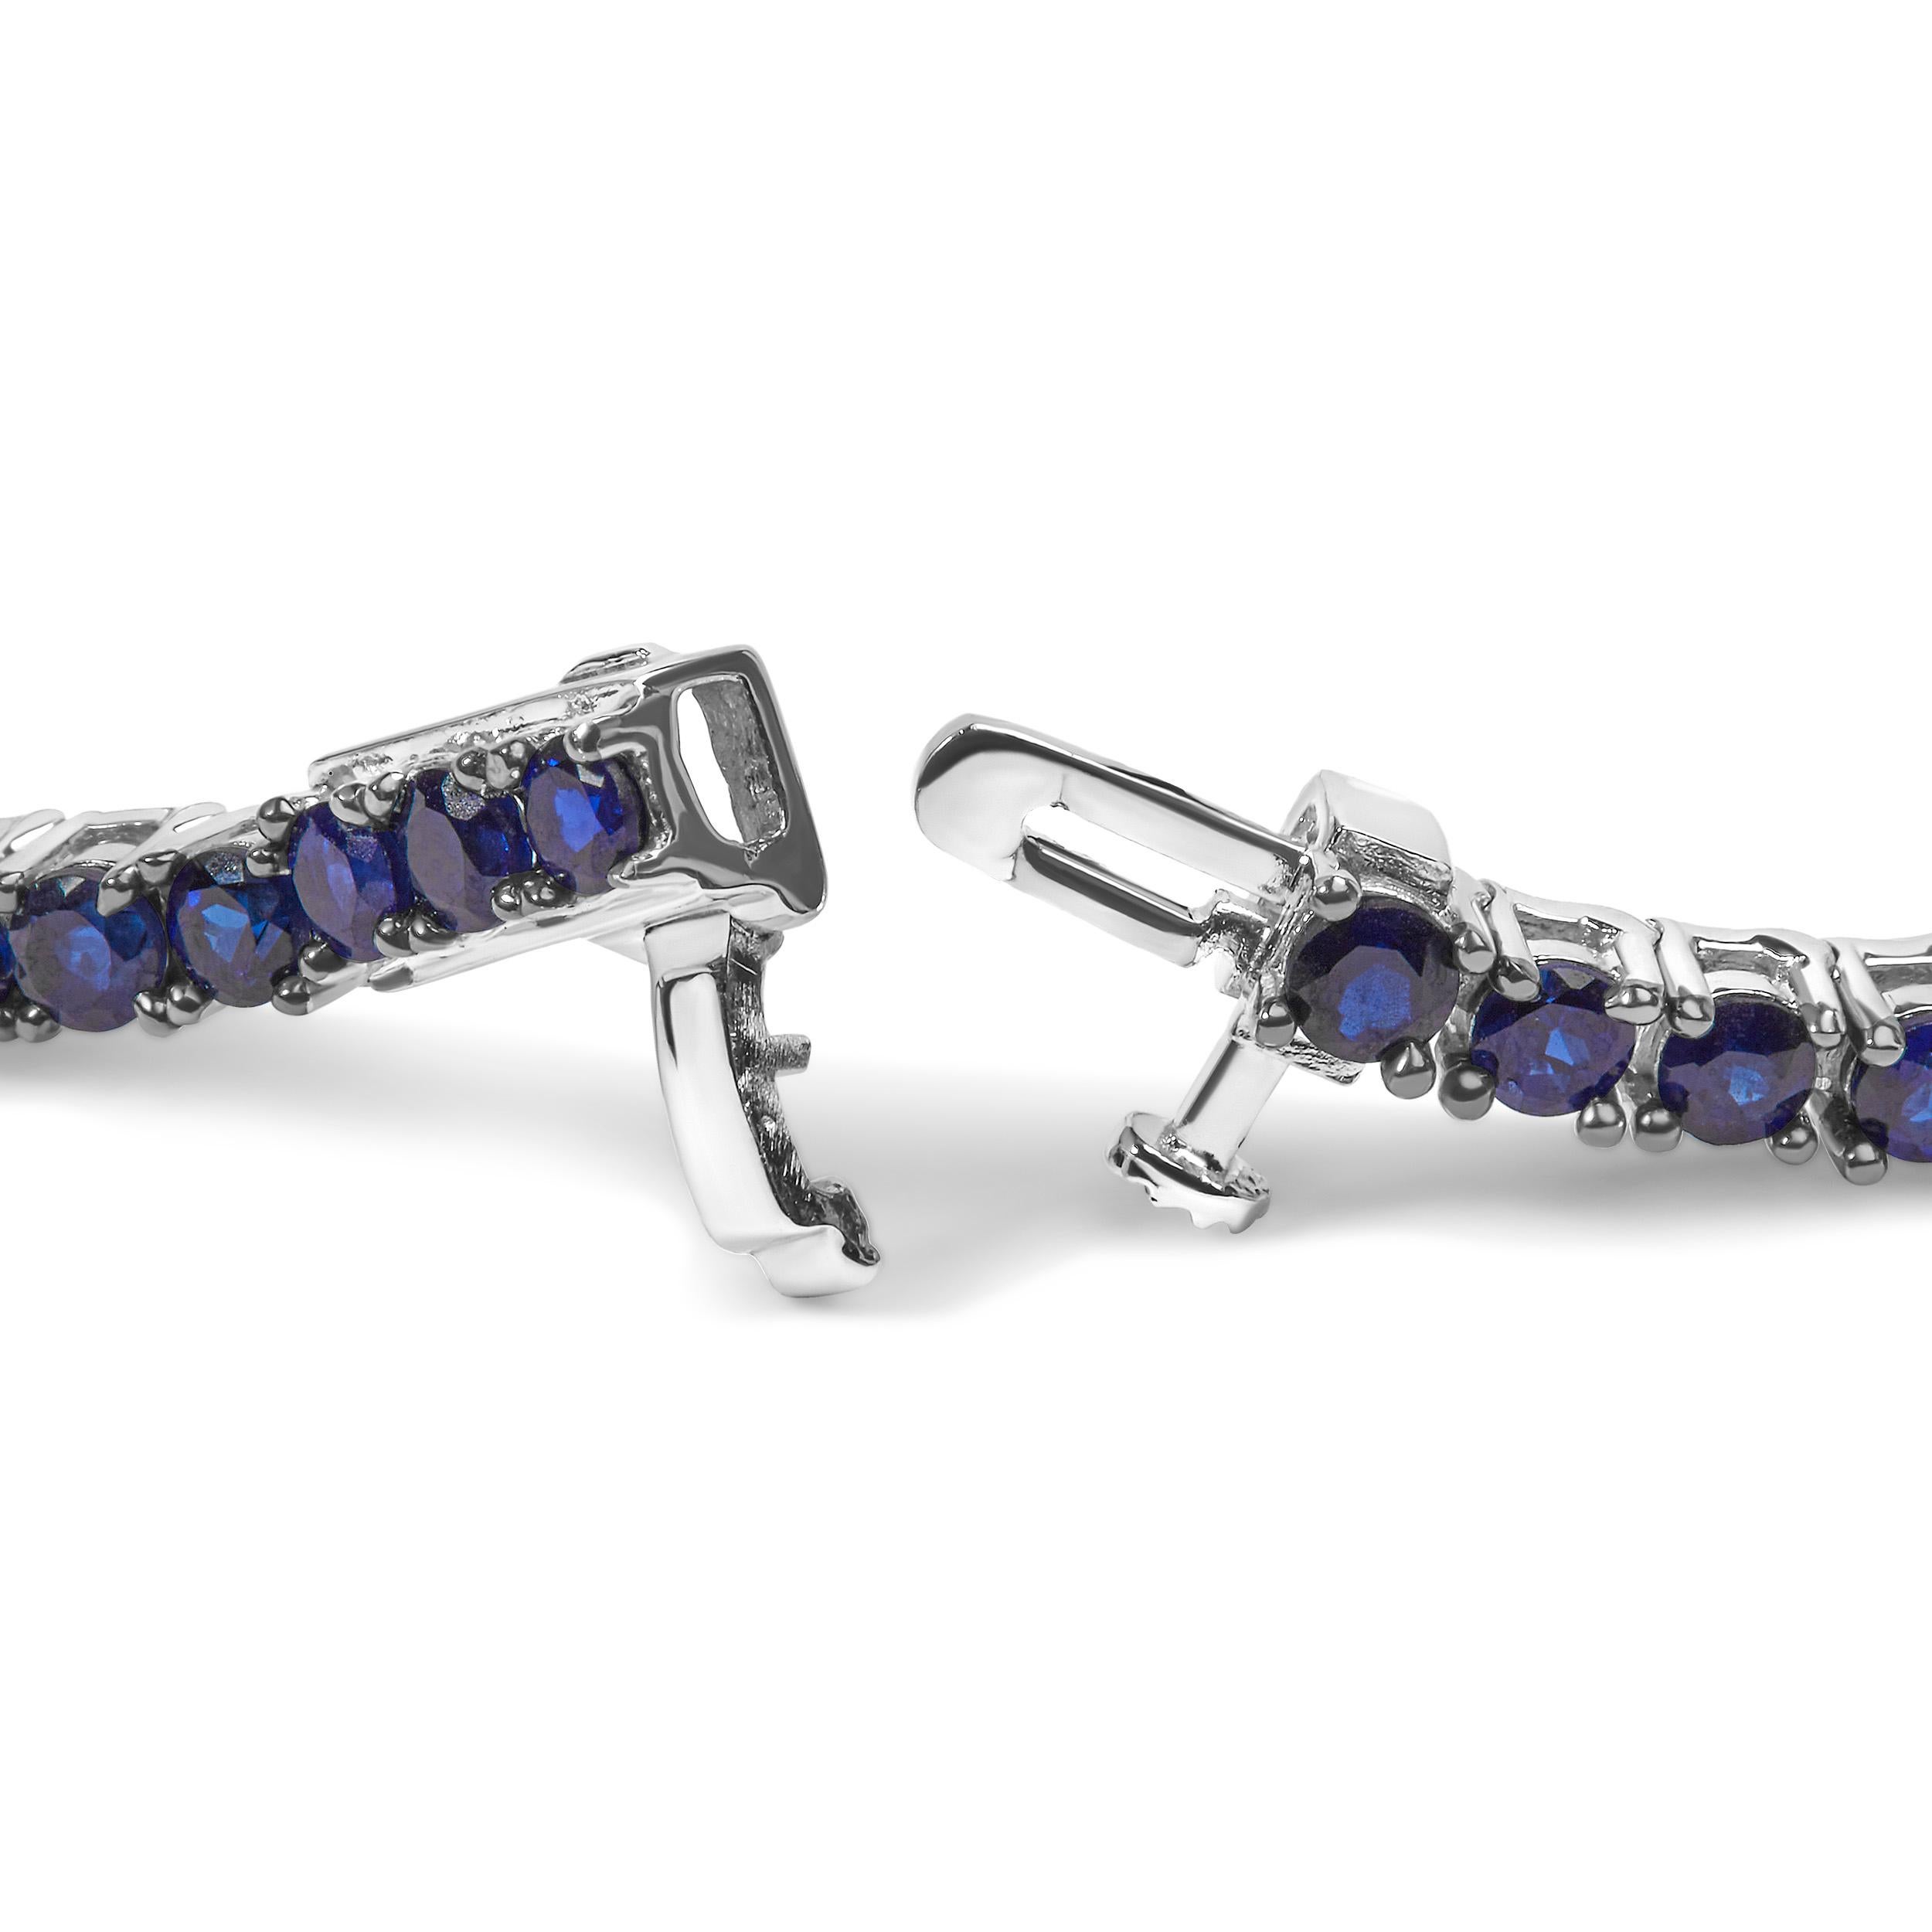 Gönnen Sie sich den Inbegriff von Eleganz mit unserem exquisiten Tennisarmband aus 925er Sterling Silber. Dieses atemberaubende Schmuckstück wurde mit viel Liebe zum Detail gefertigt und besticht durch 64 runde, im Labor hergestellte blaue Saphire.